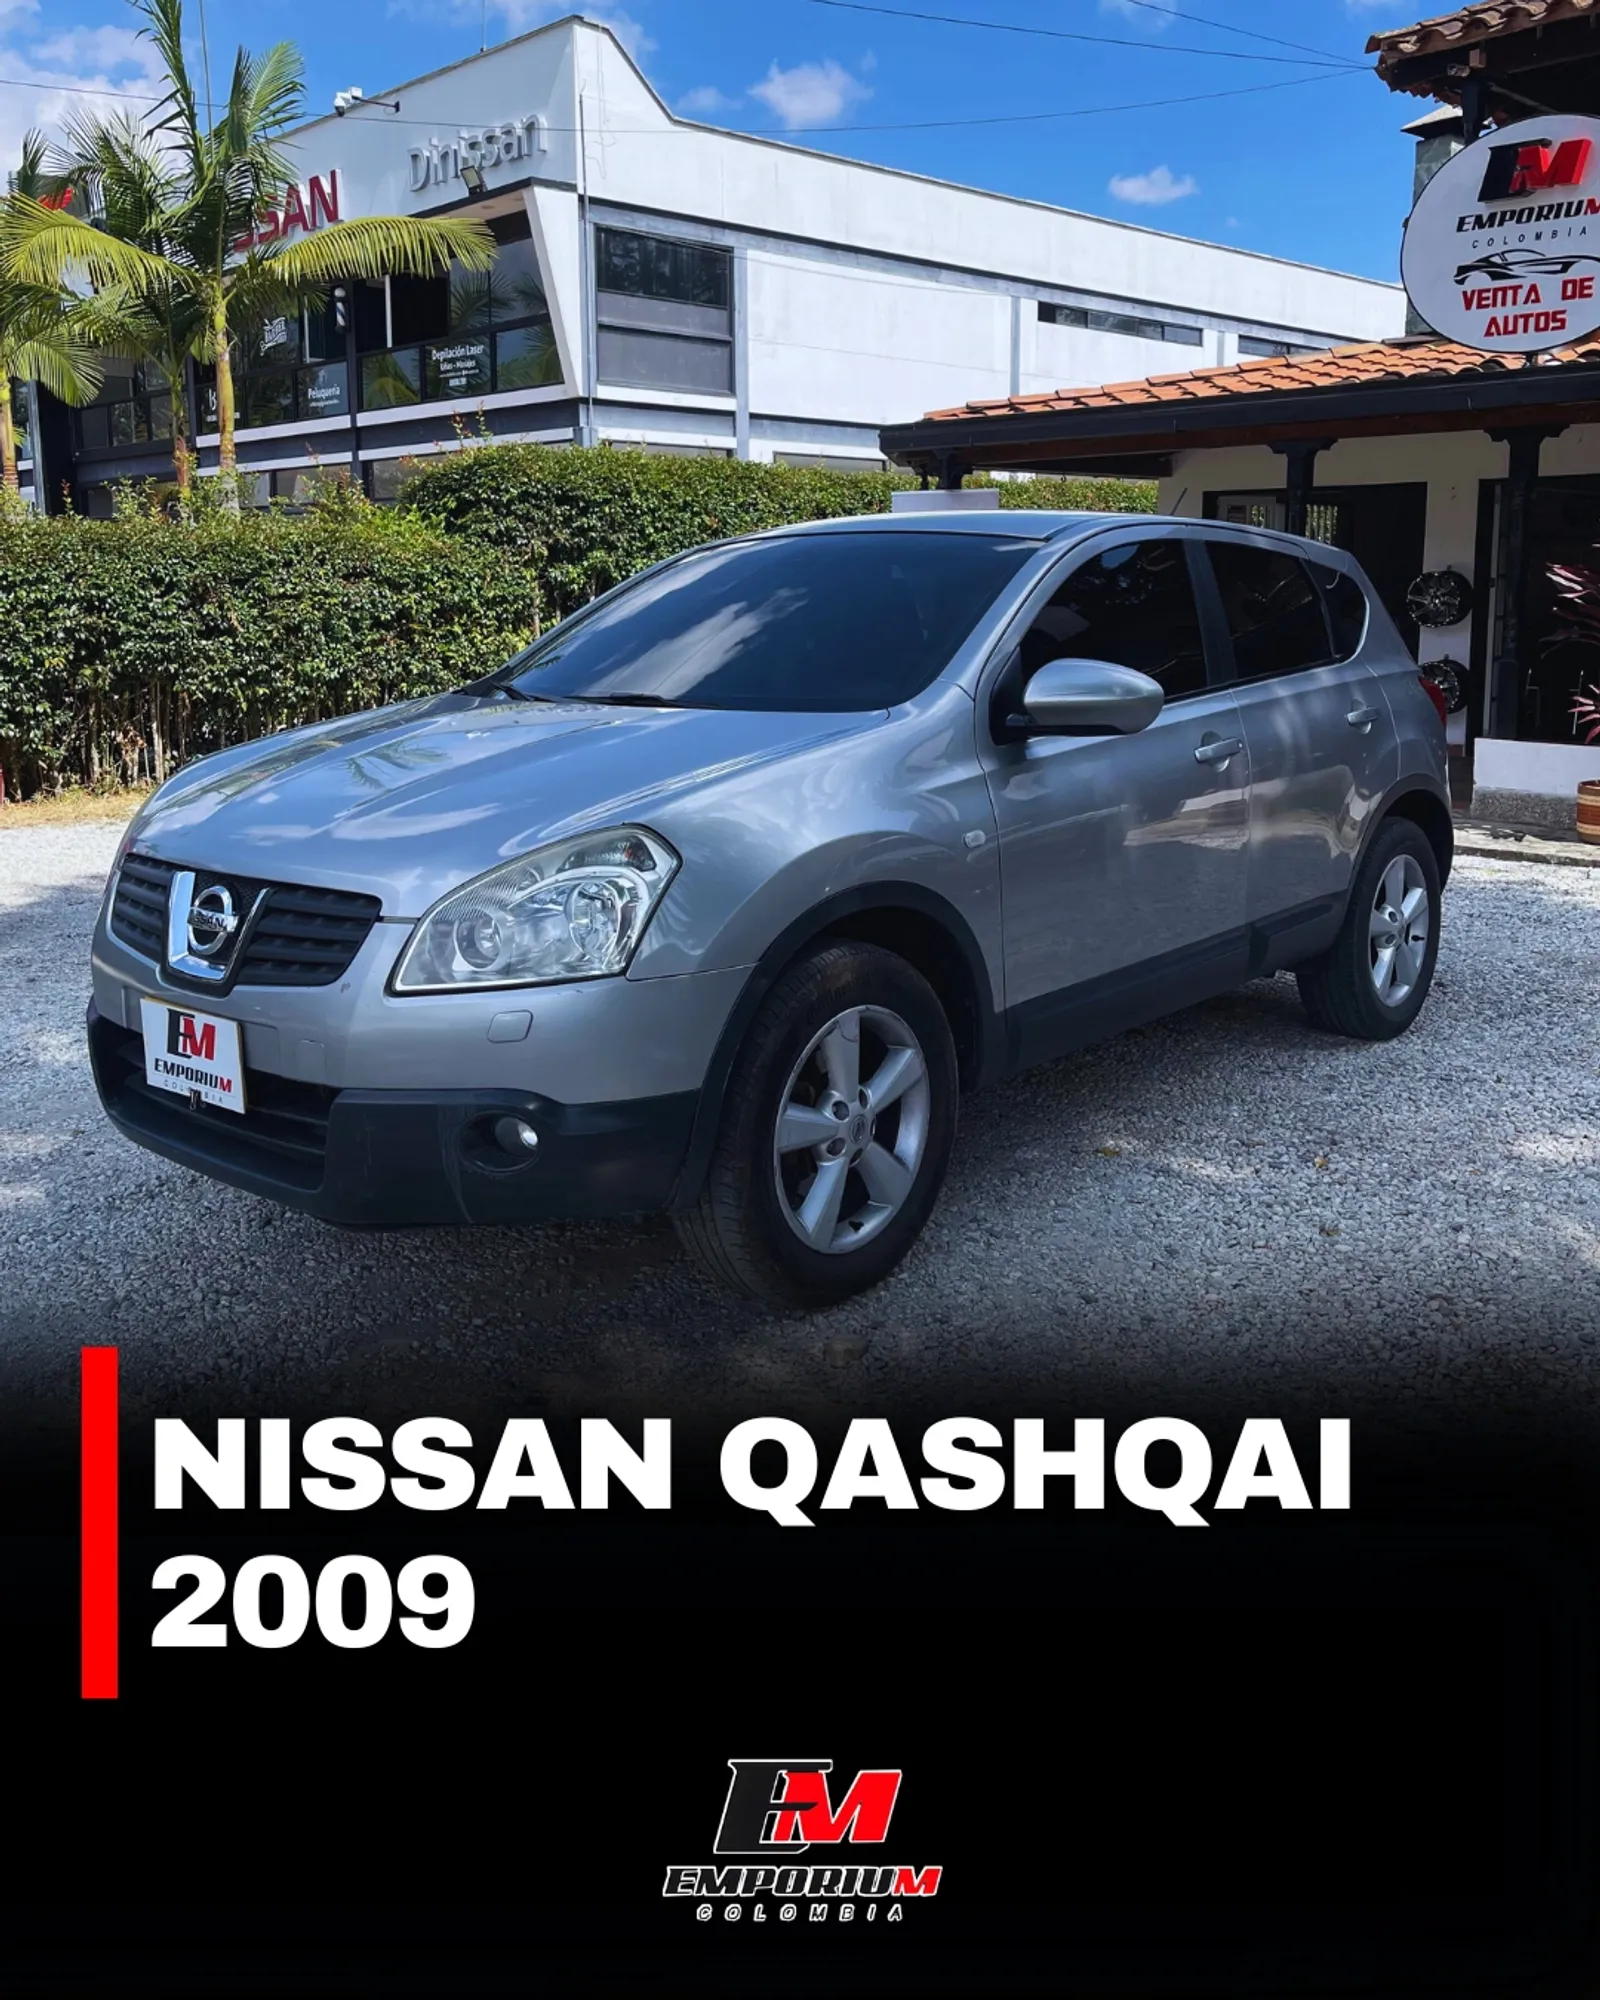 Nissan Qashqai 2009